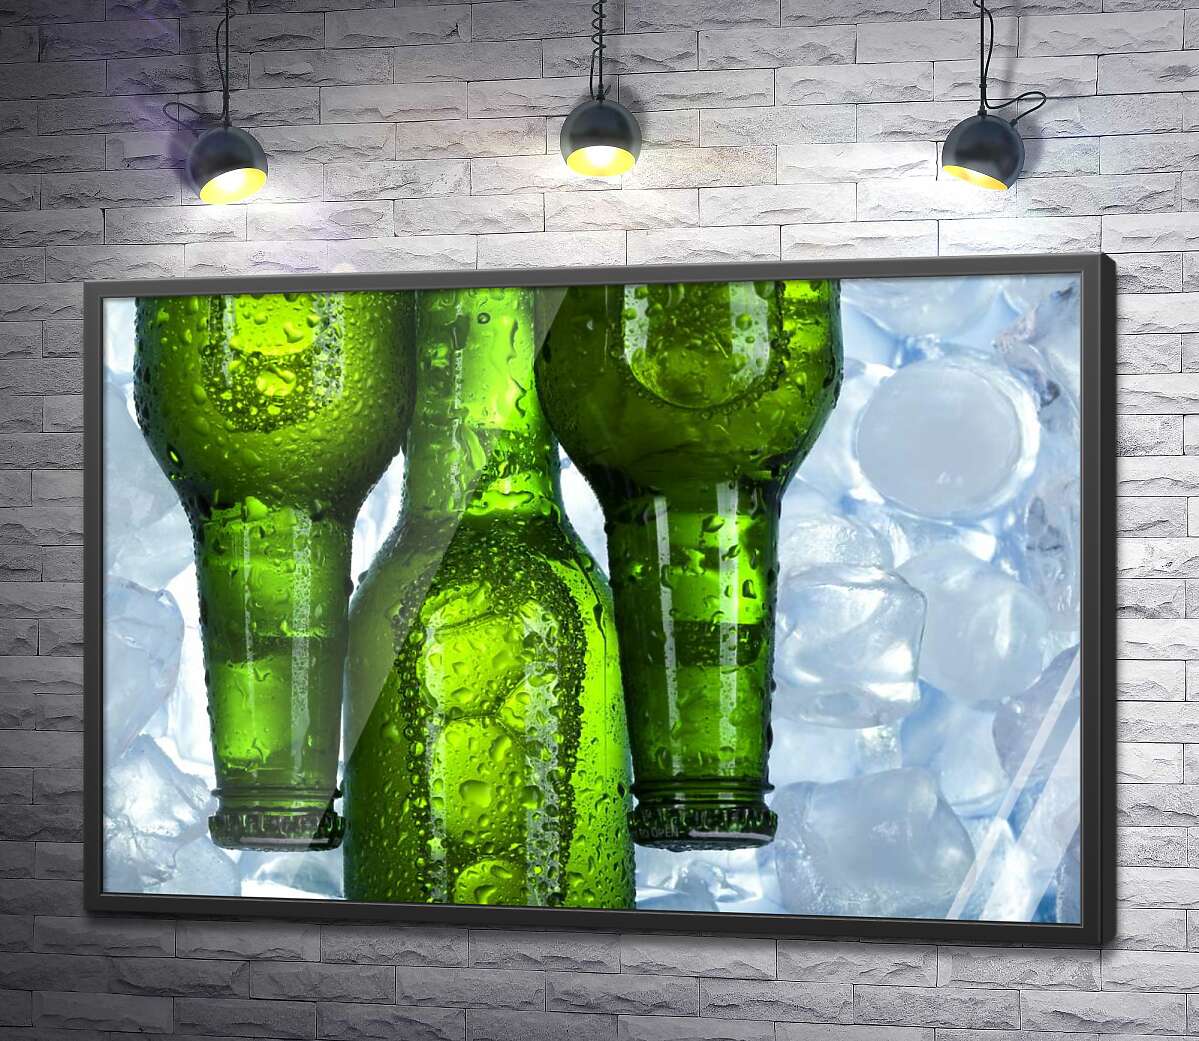 постер Прозрачные капли воды стекают по зеленому стеклу бутылок с пивом